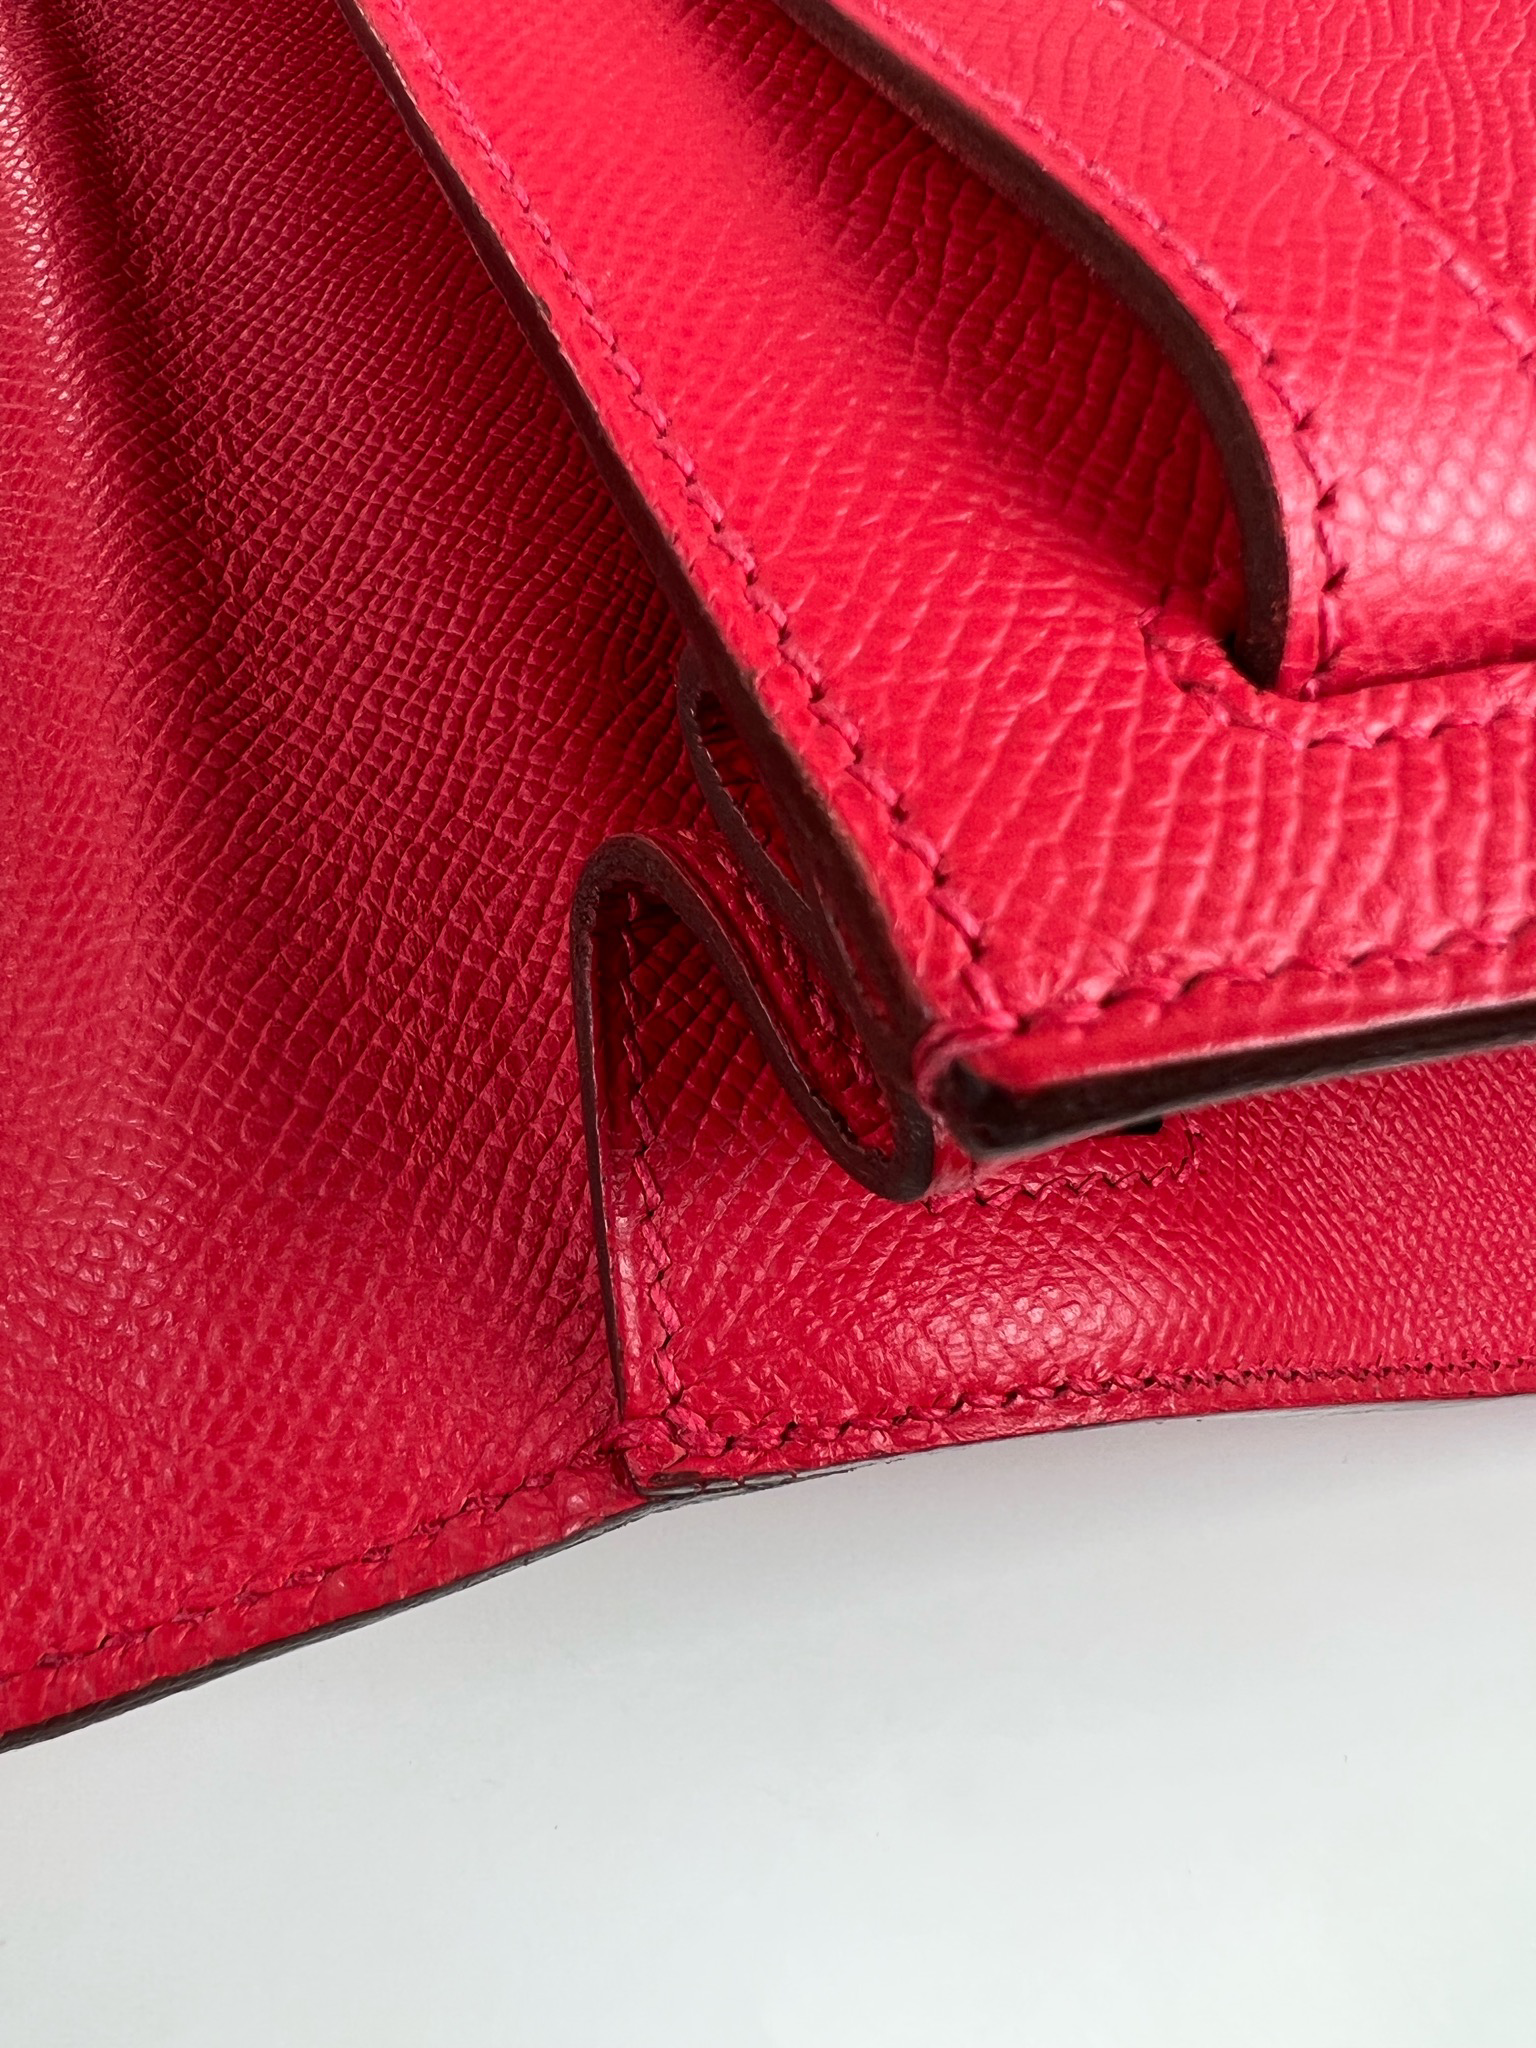 Hermès - Hermès Kelly 28 Epsom Leather Handbag-Rouge Casaque Gold Hardware